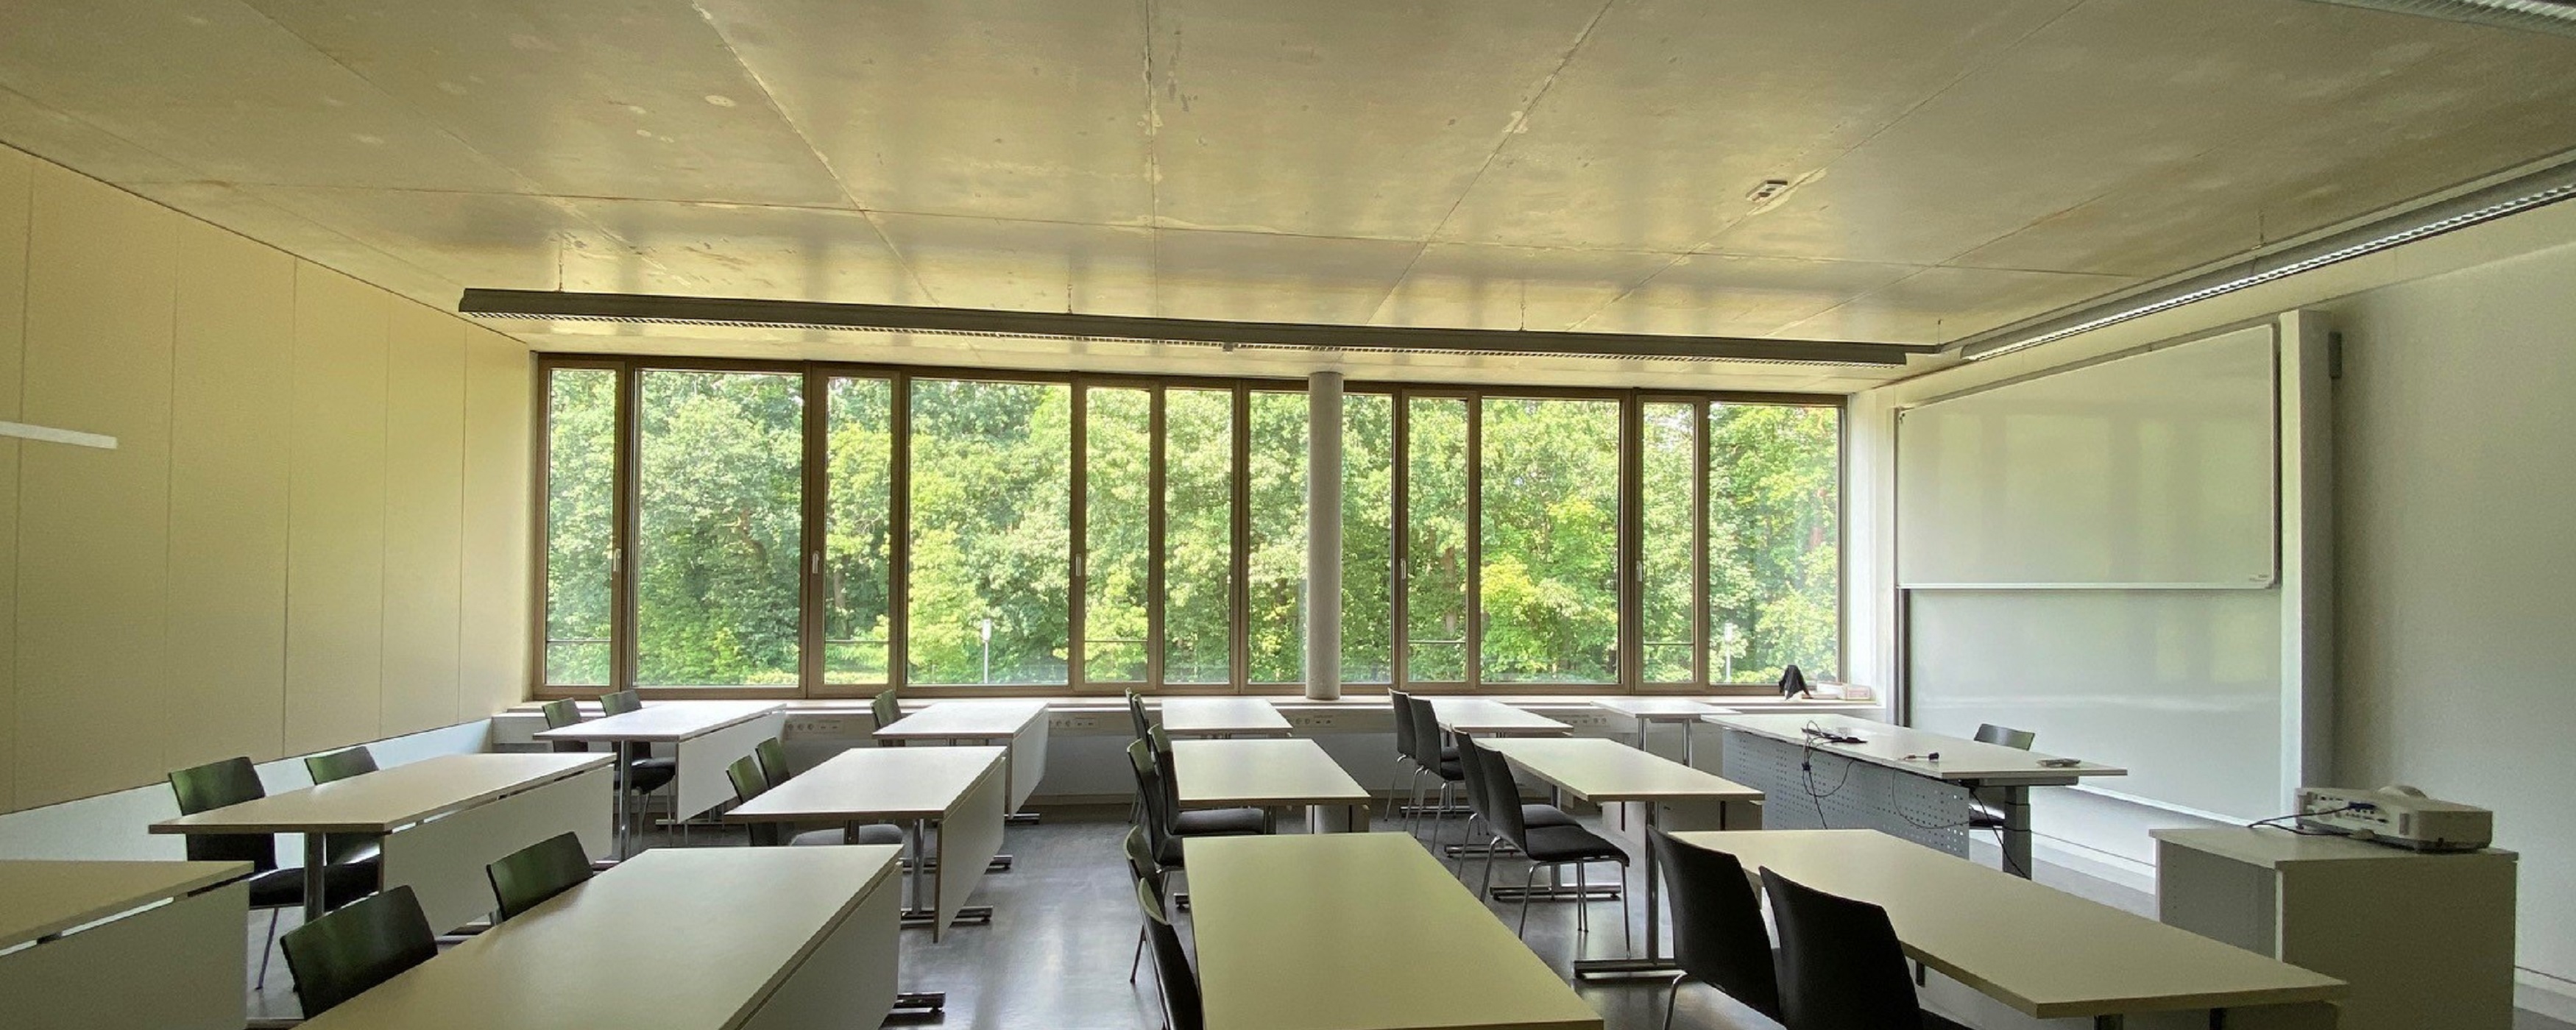 Bild: Das Bild zeigt einen Lehrsaal im Höhrsaalgebäude mit Blick auf die Fenster.